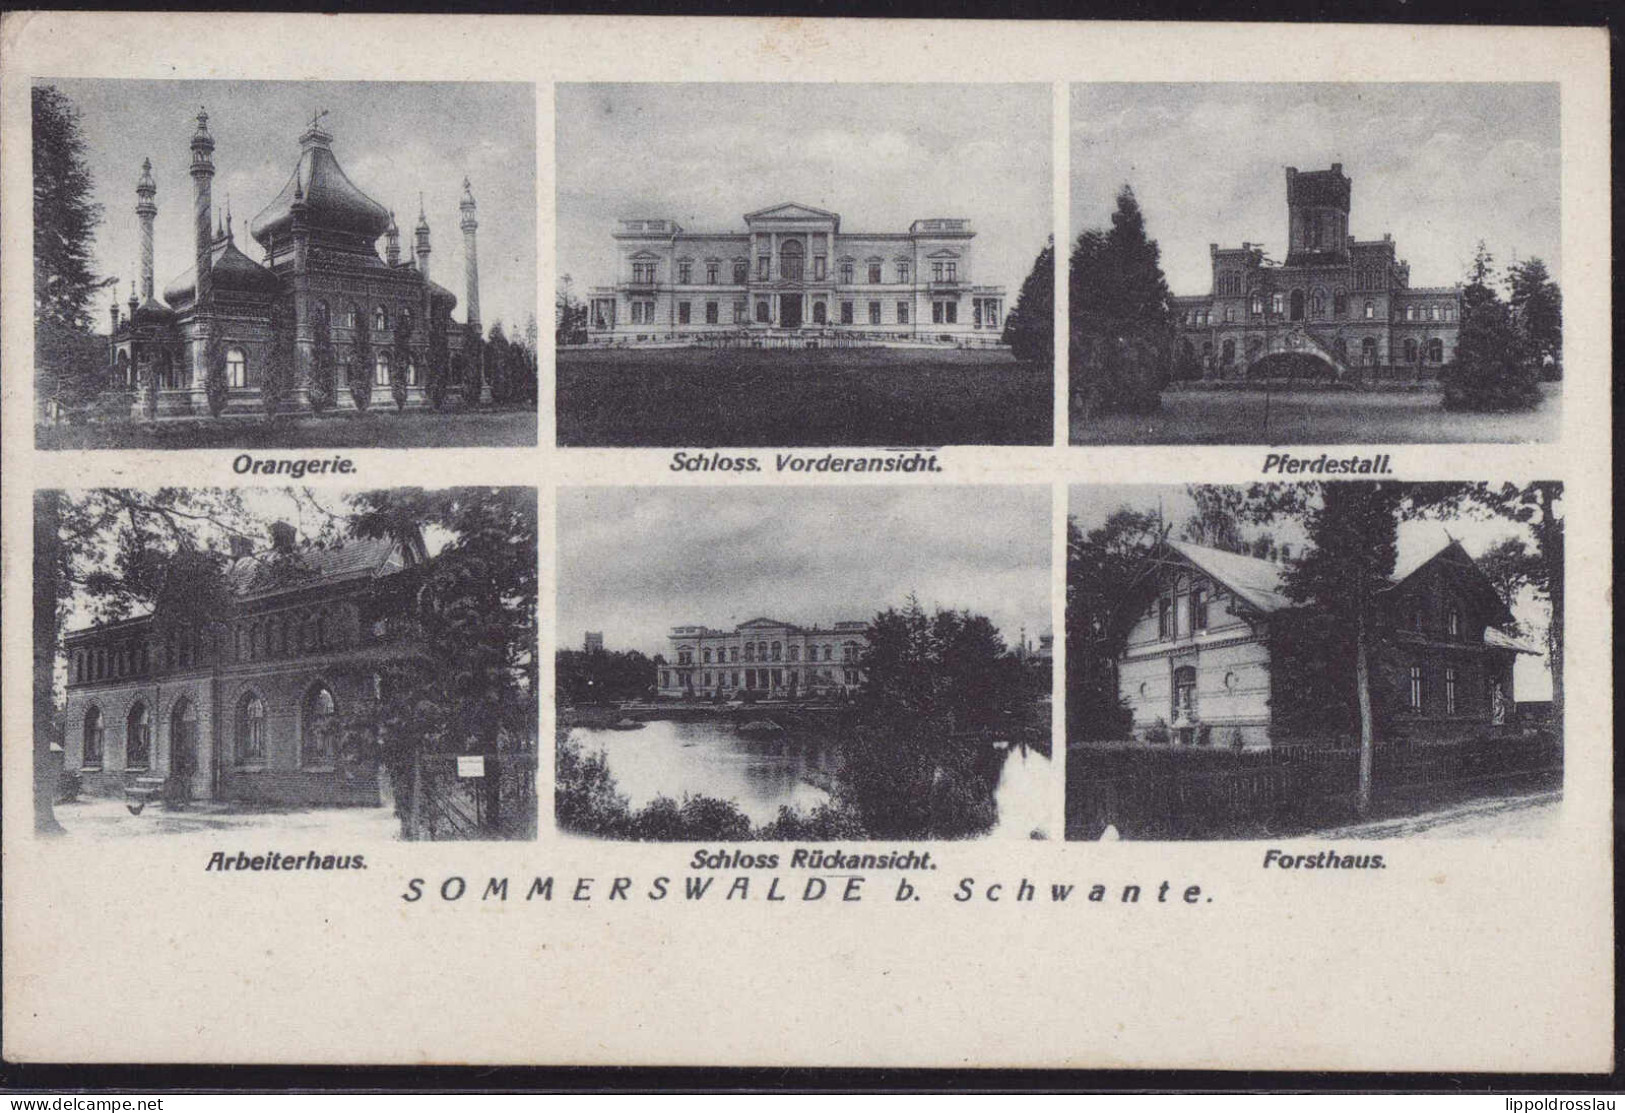 Gest. O-1421 Sommerswalde Bei Schwante 6-Bildkarte 1934 - Velten